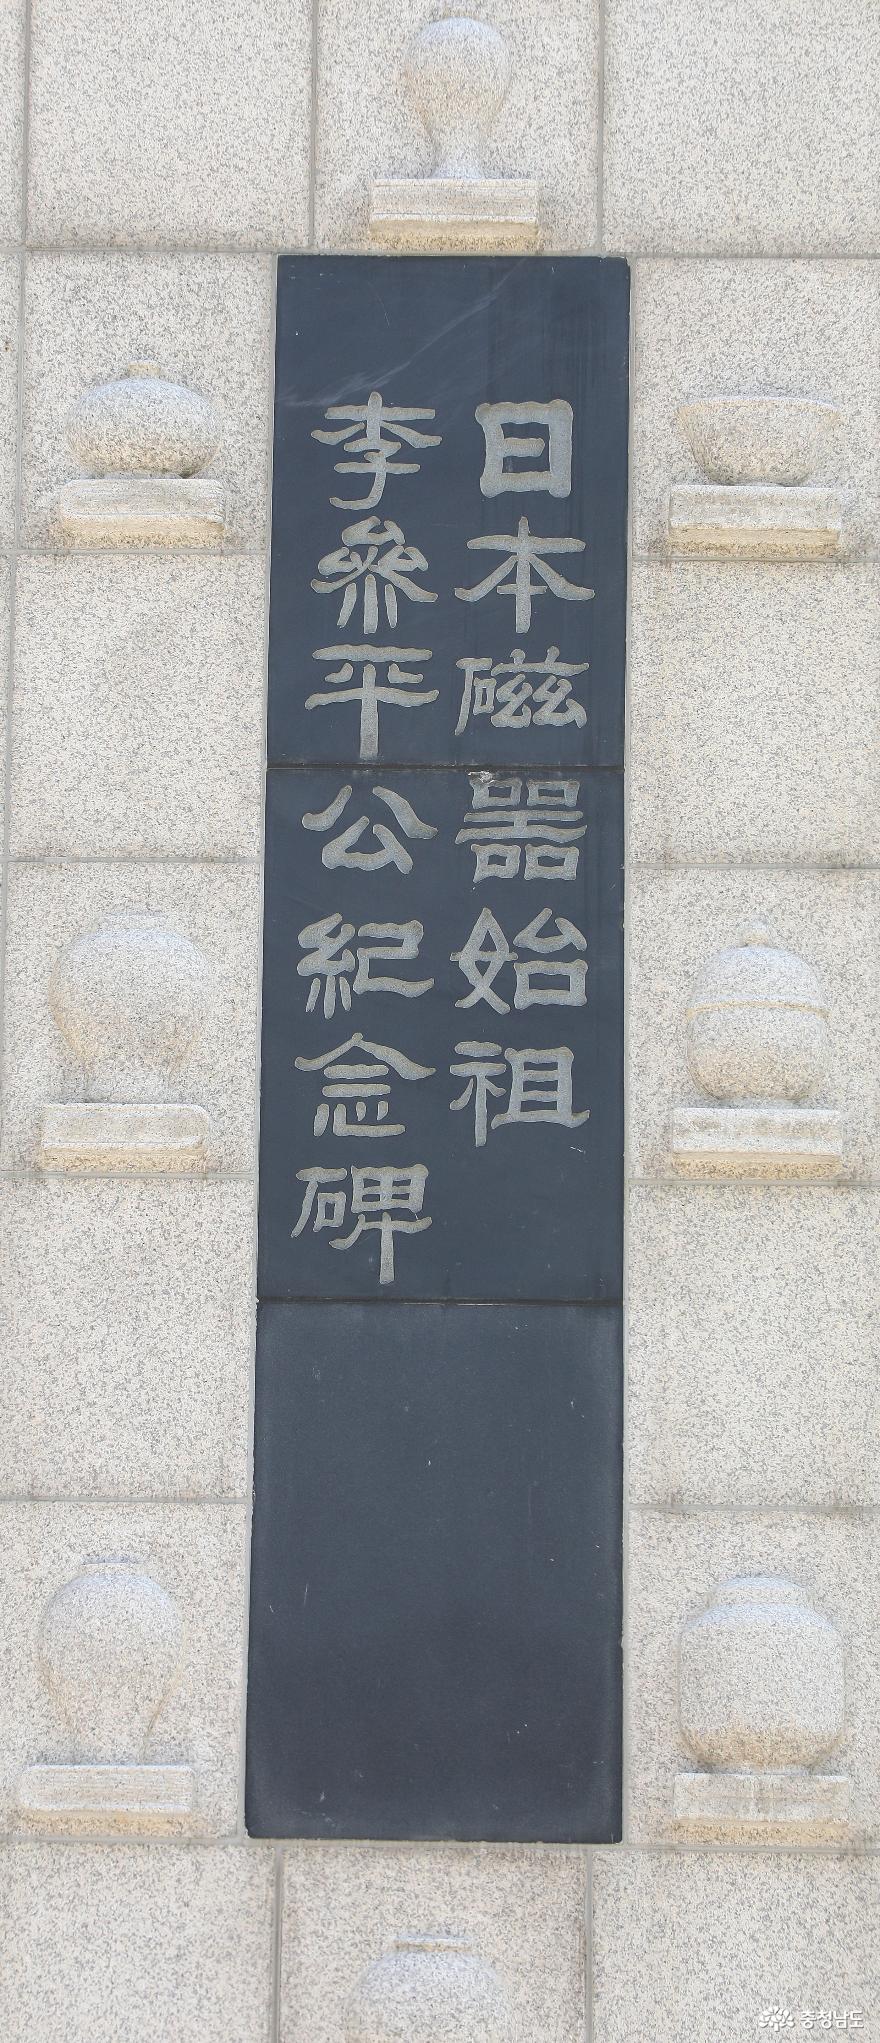 “일본자기의 시조 이삼평(李參平 ?~1655)공 기념비” 의 봄